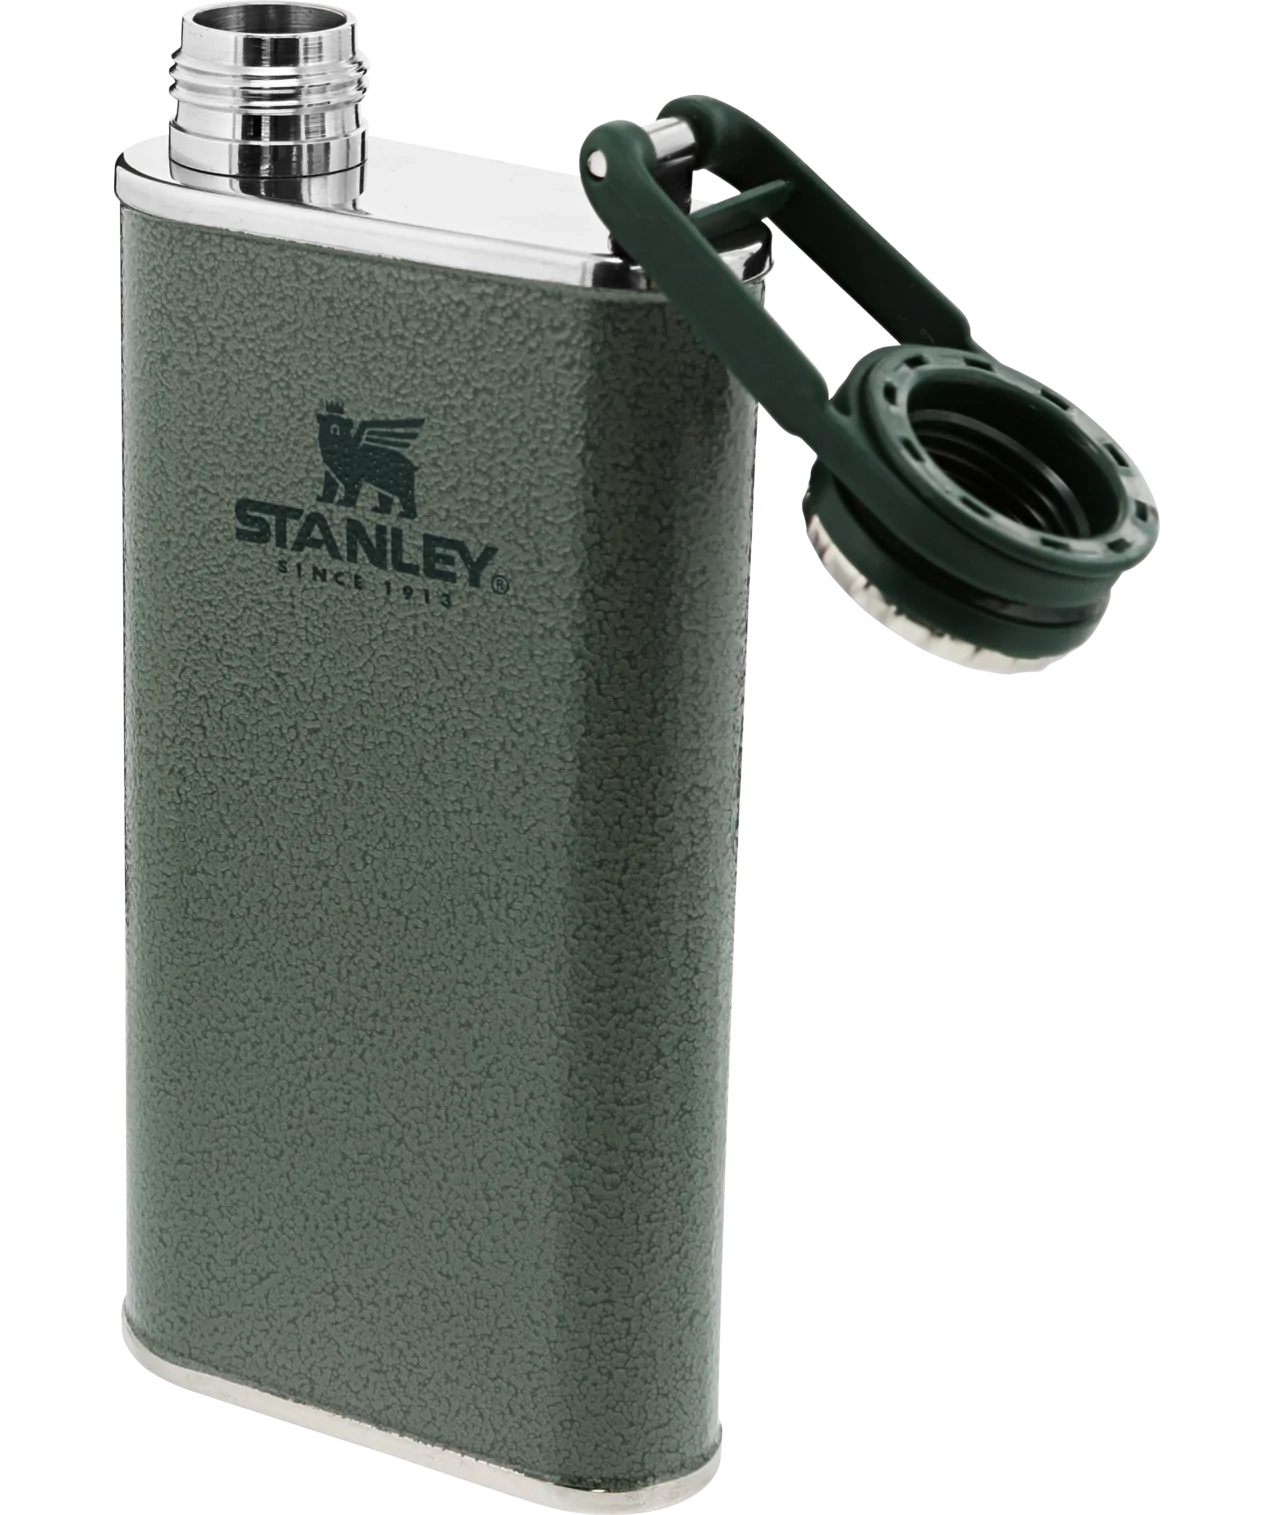 Danner - Stanley X Danner Classic Flask